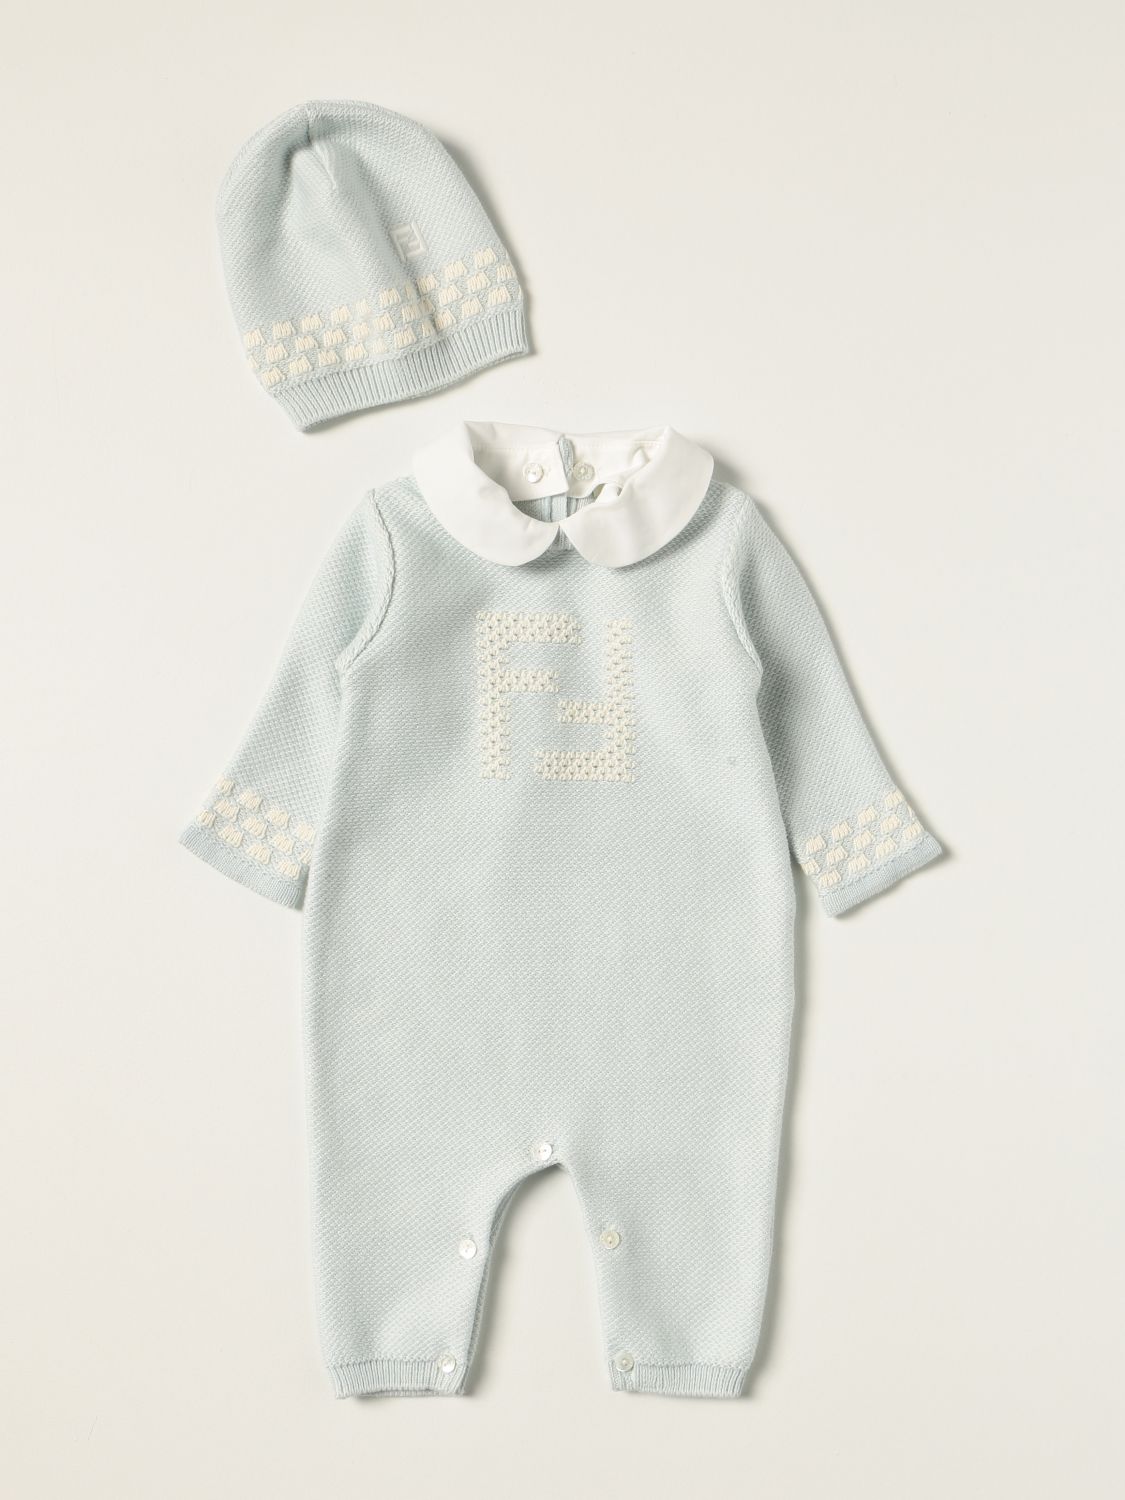 婴儿全身套装 Fendi: 儿童 Fendi 浅蓝色 1